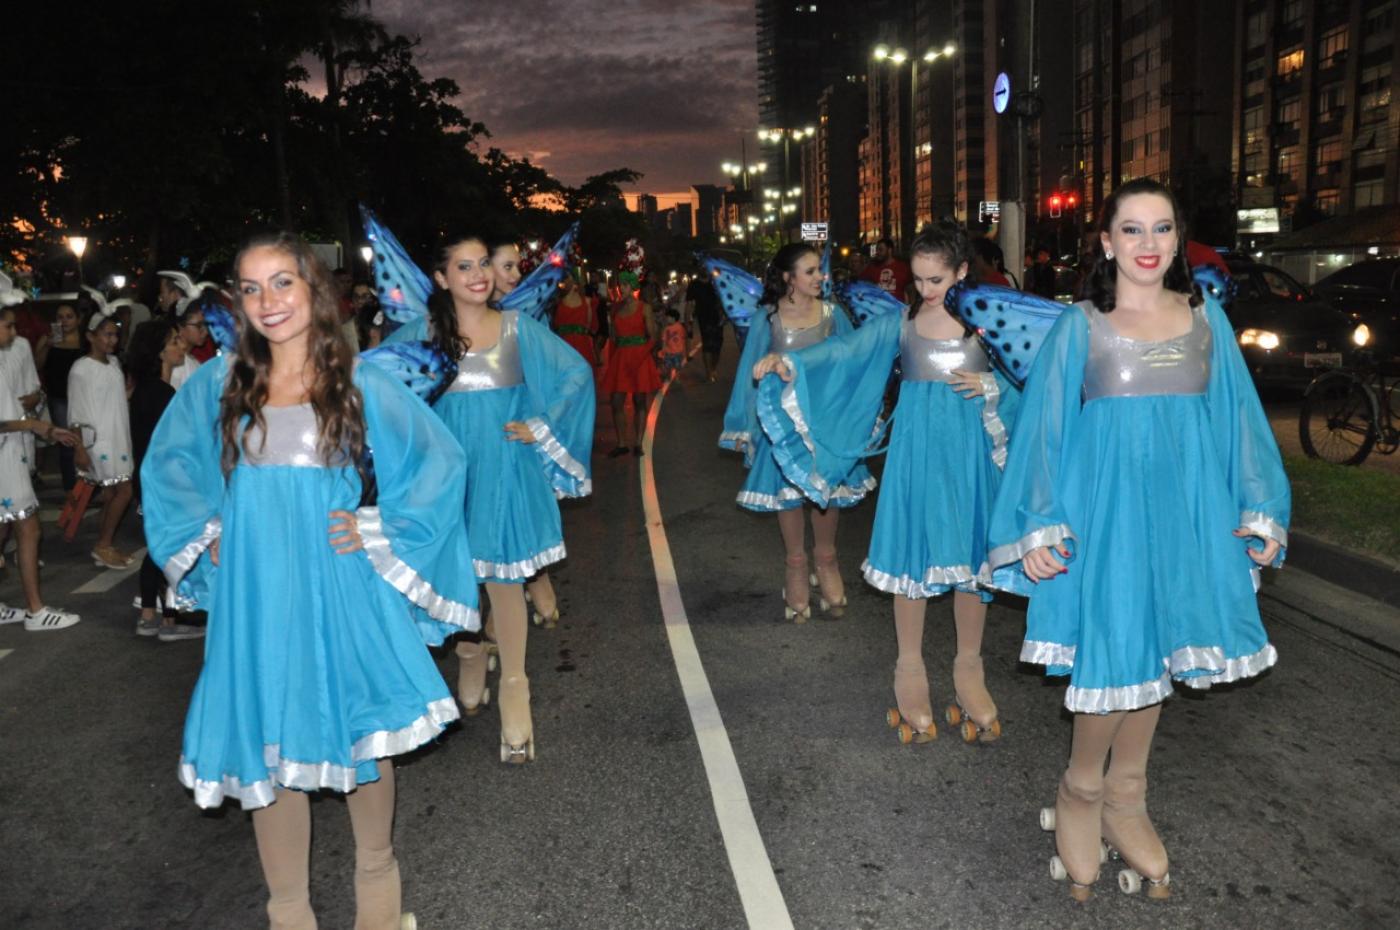 patinadoras andam por avenida vestidas com vestidos que têm asas, como borboletas. #paratodosverem 